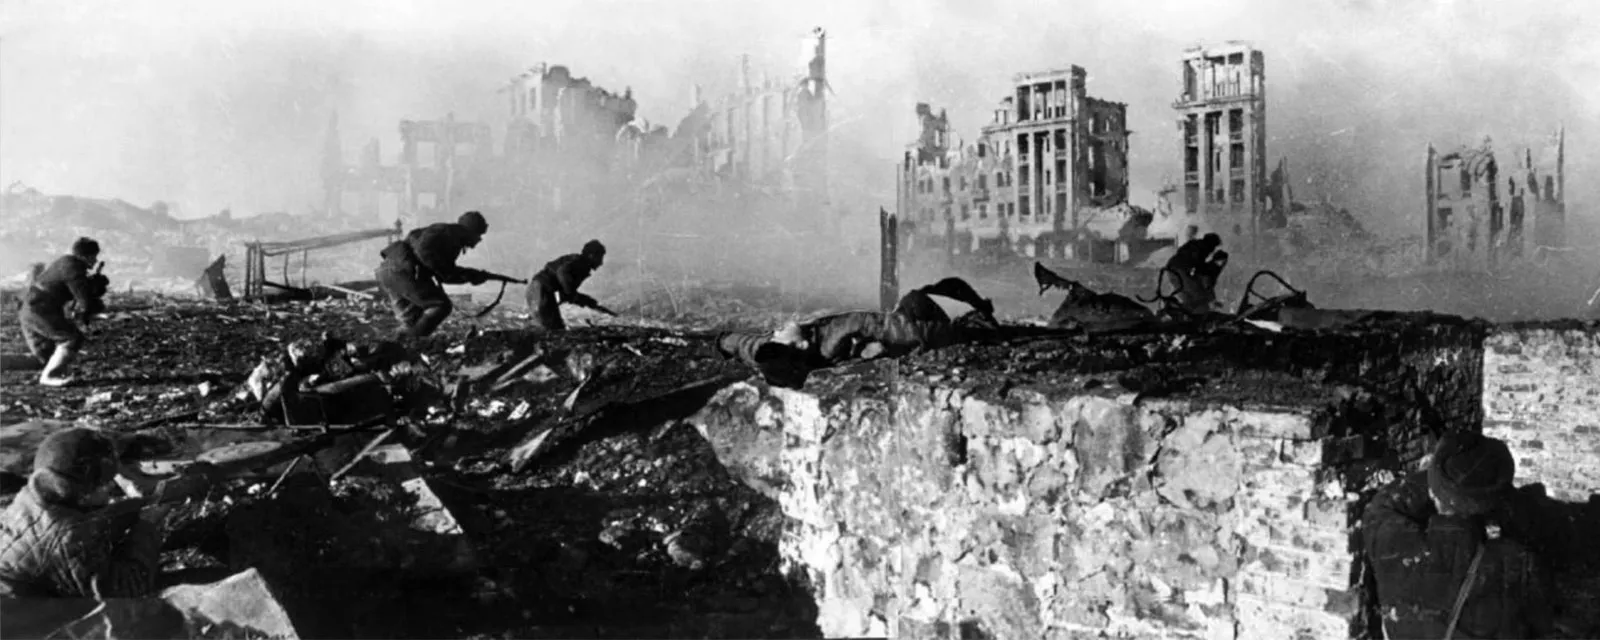 الجنود السوفييت في هجوم ضد القوات الألمانية خلال معركة ستالينجراد، فبراير/ شباط 1943. (وكالات)